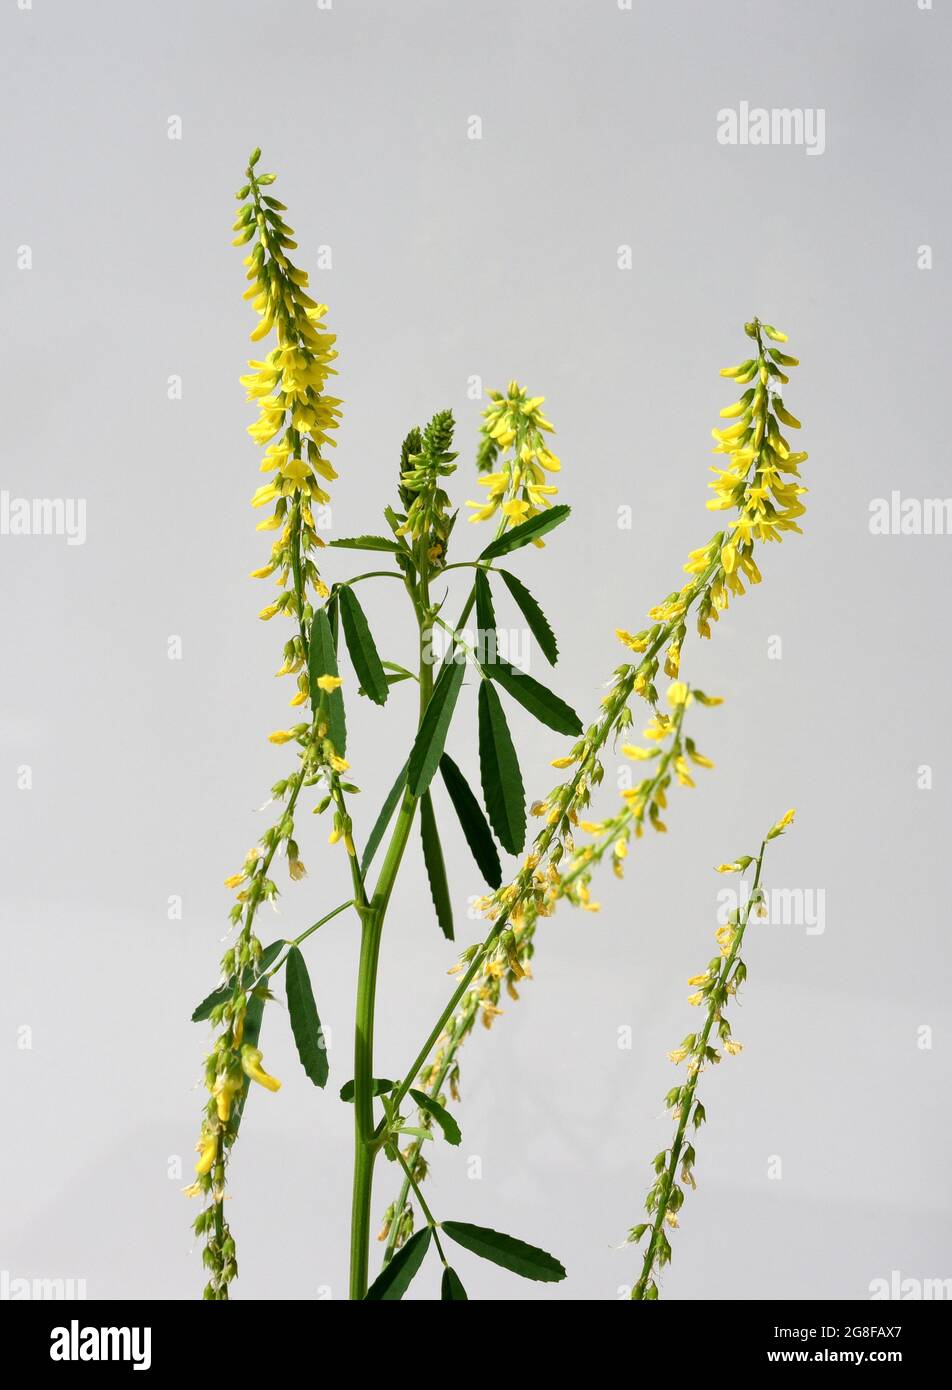 Steinklee, Melilotus officinalis, ist eine wichtige Heil- und Medizinalpflanze und mit weissen oder gelben Bluten. Süßes Klee, Melilotus officinal Stockfoto